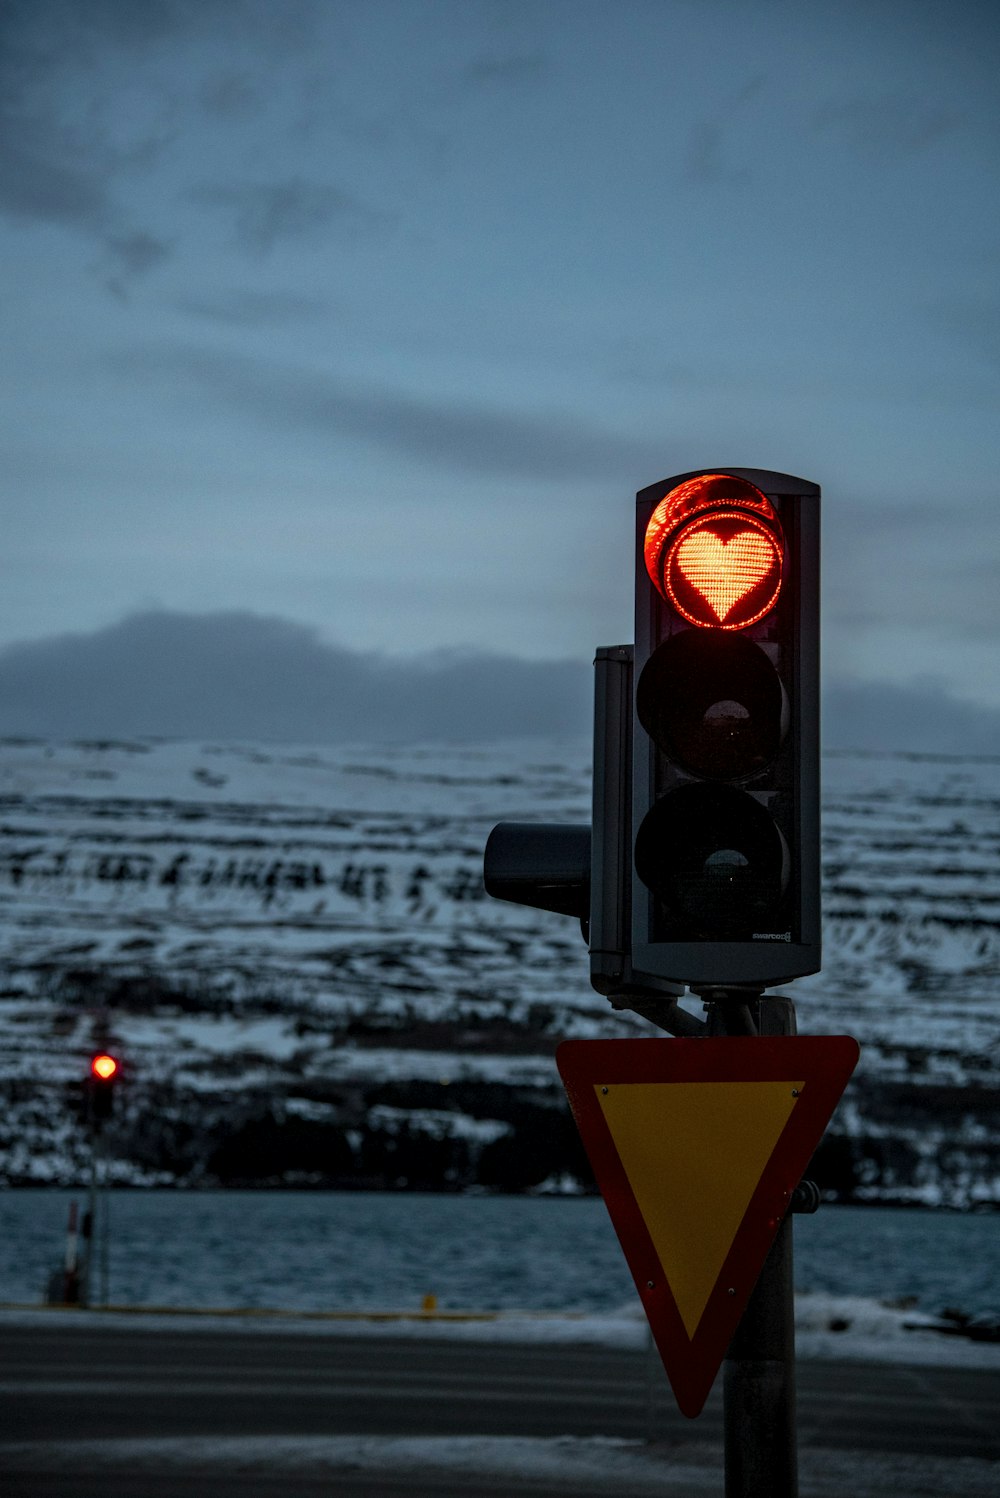 traffic light displaying orange heart